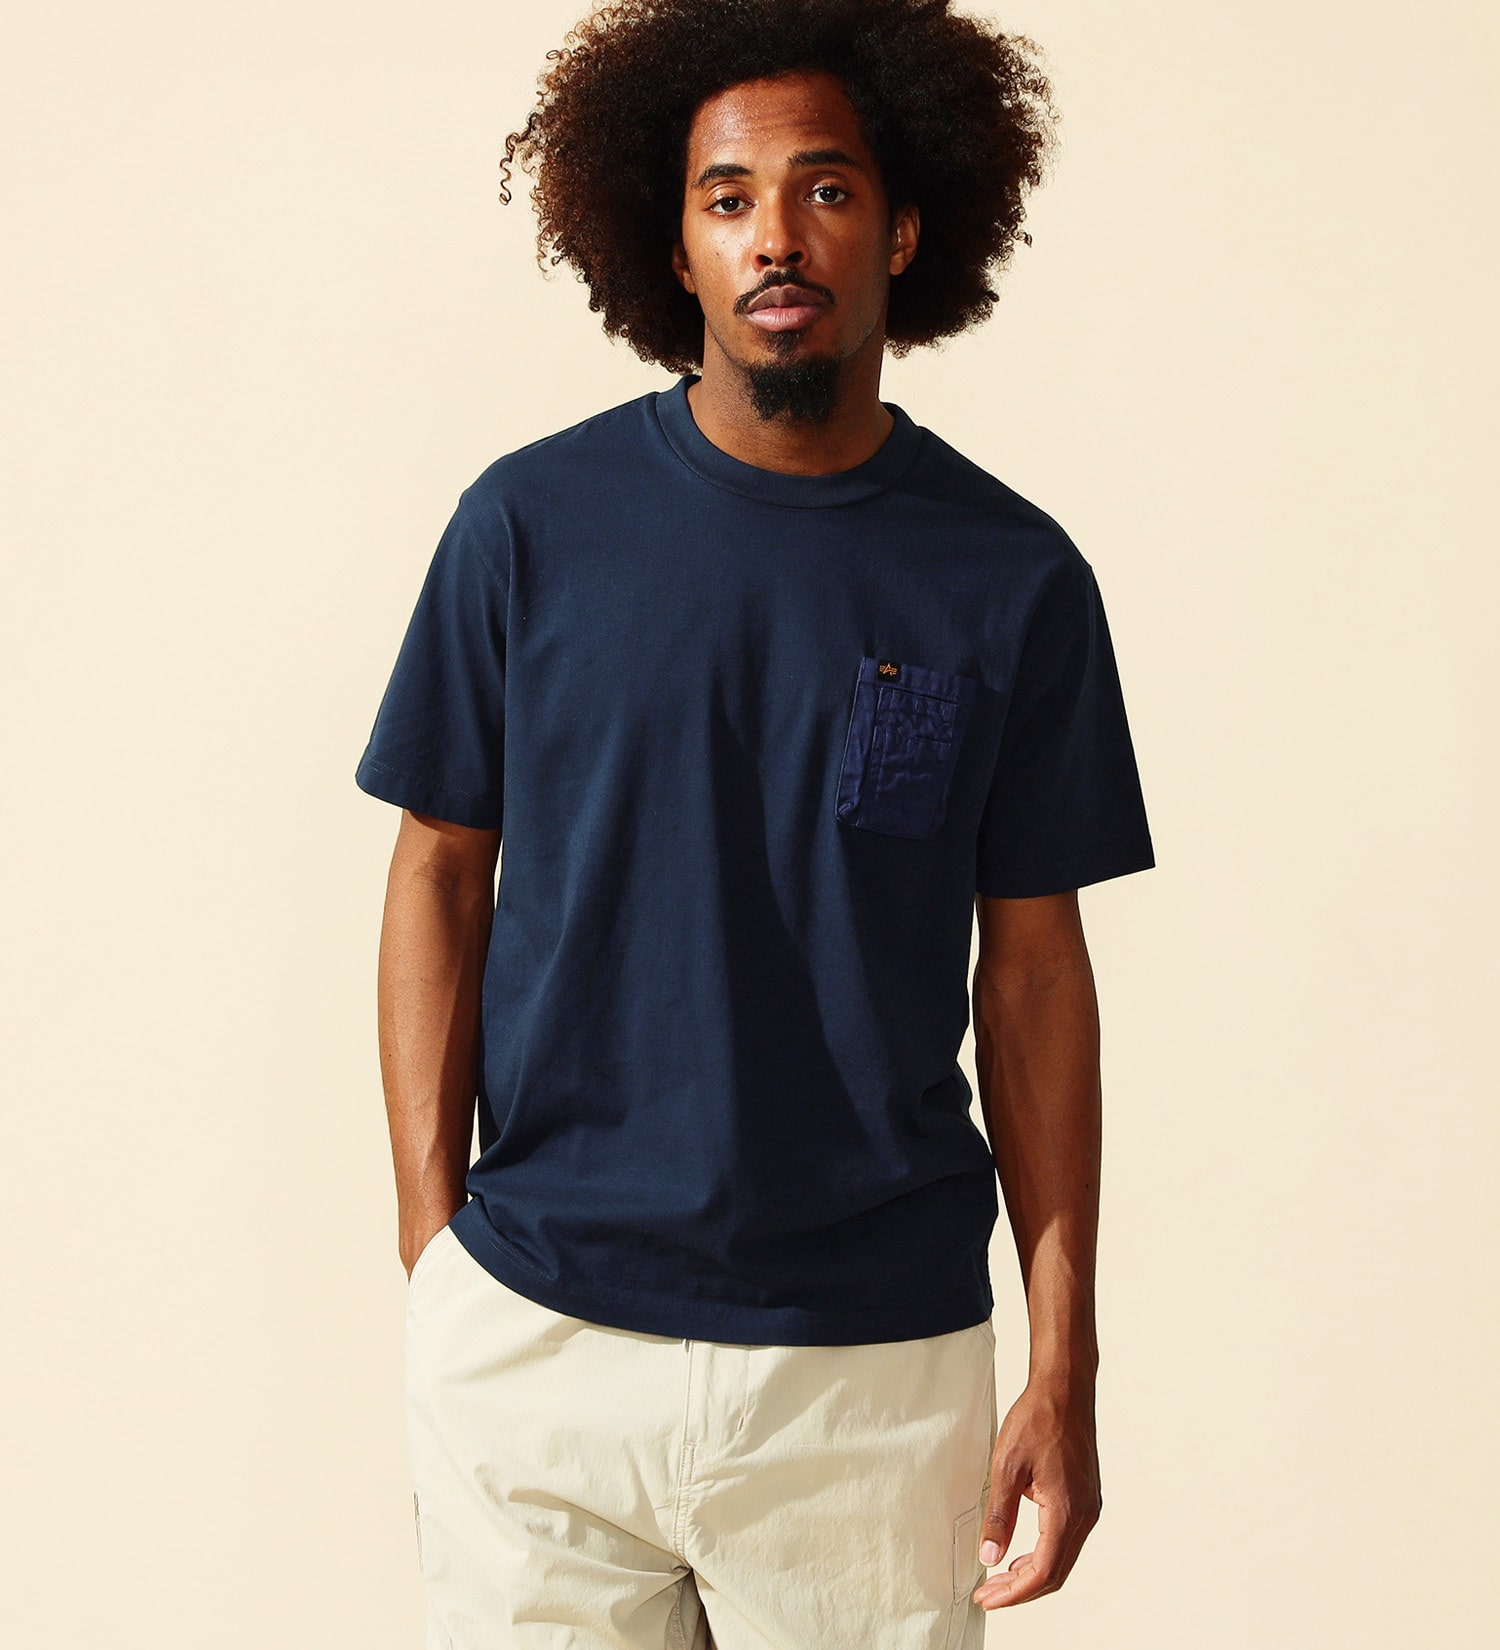 ALPHA(アルファ)のユーティリティーポケットTシャツ 半袖|トップス/Tシャツ/カットソー/メンズ|ネイビー